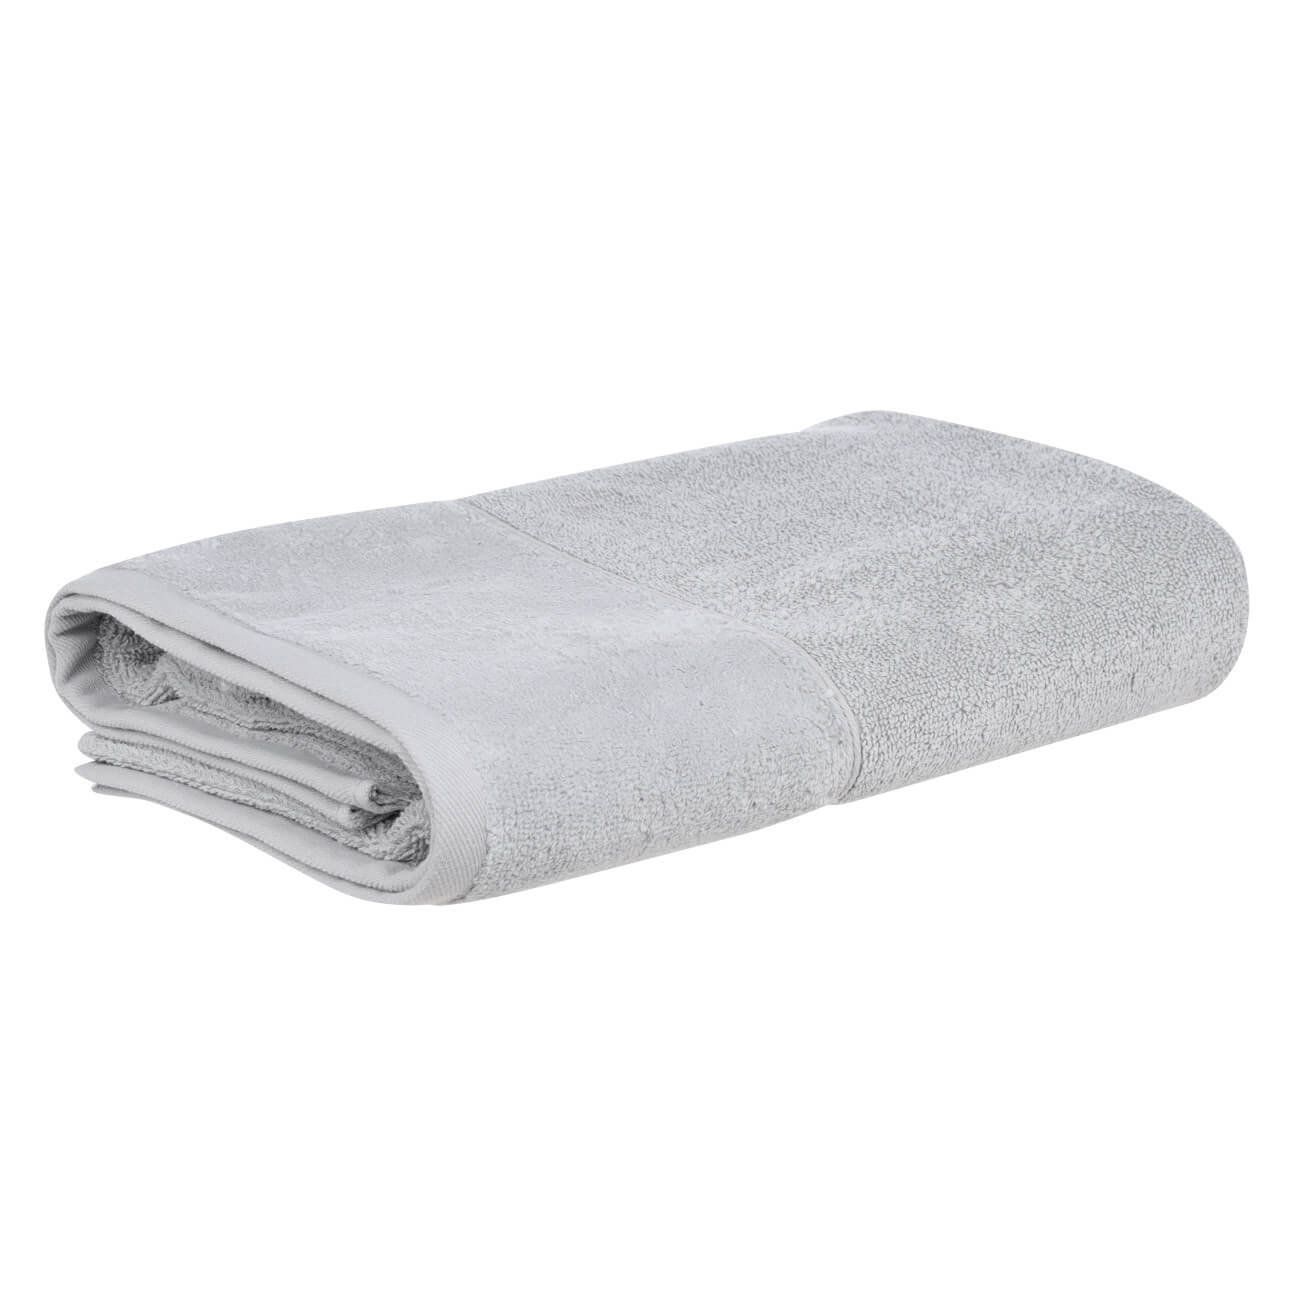 Полотенце, 50х90 см, хлопок, серое, Velvet touch натуральное бумажное полотенце tork